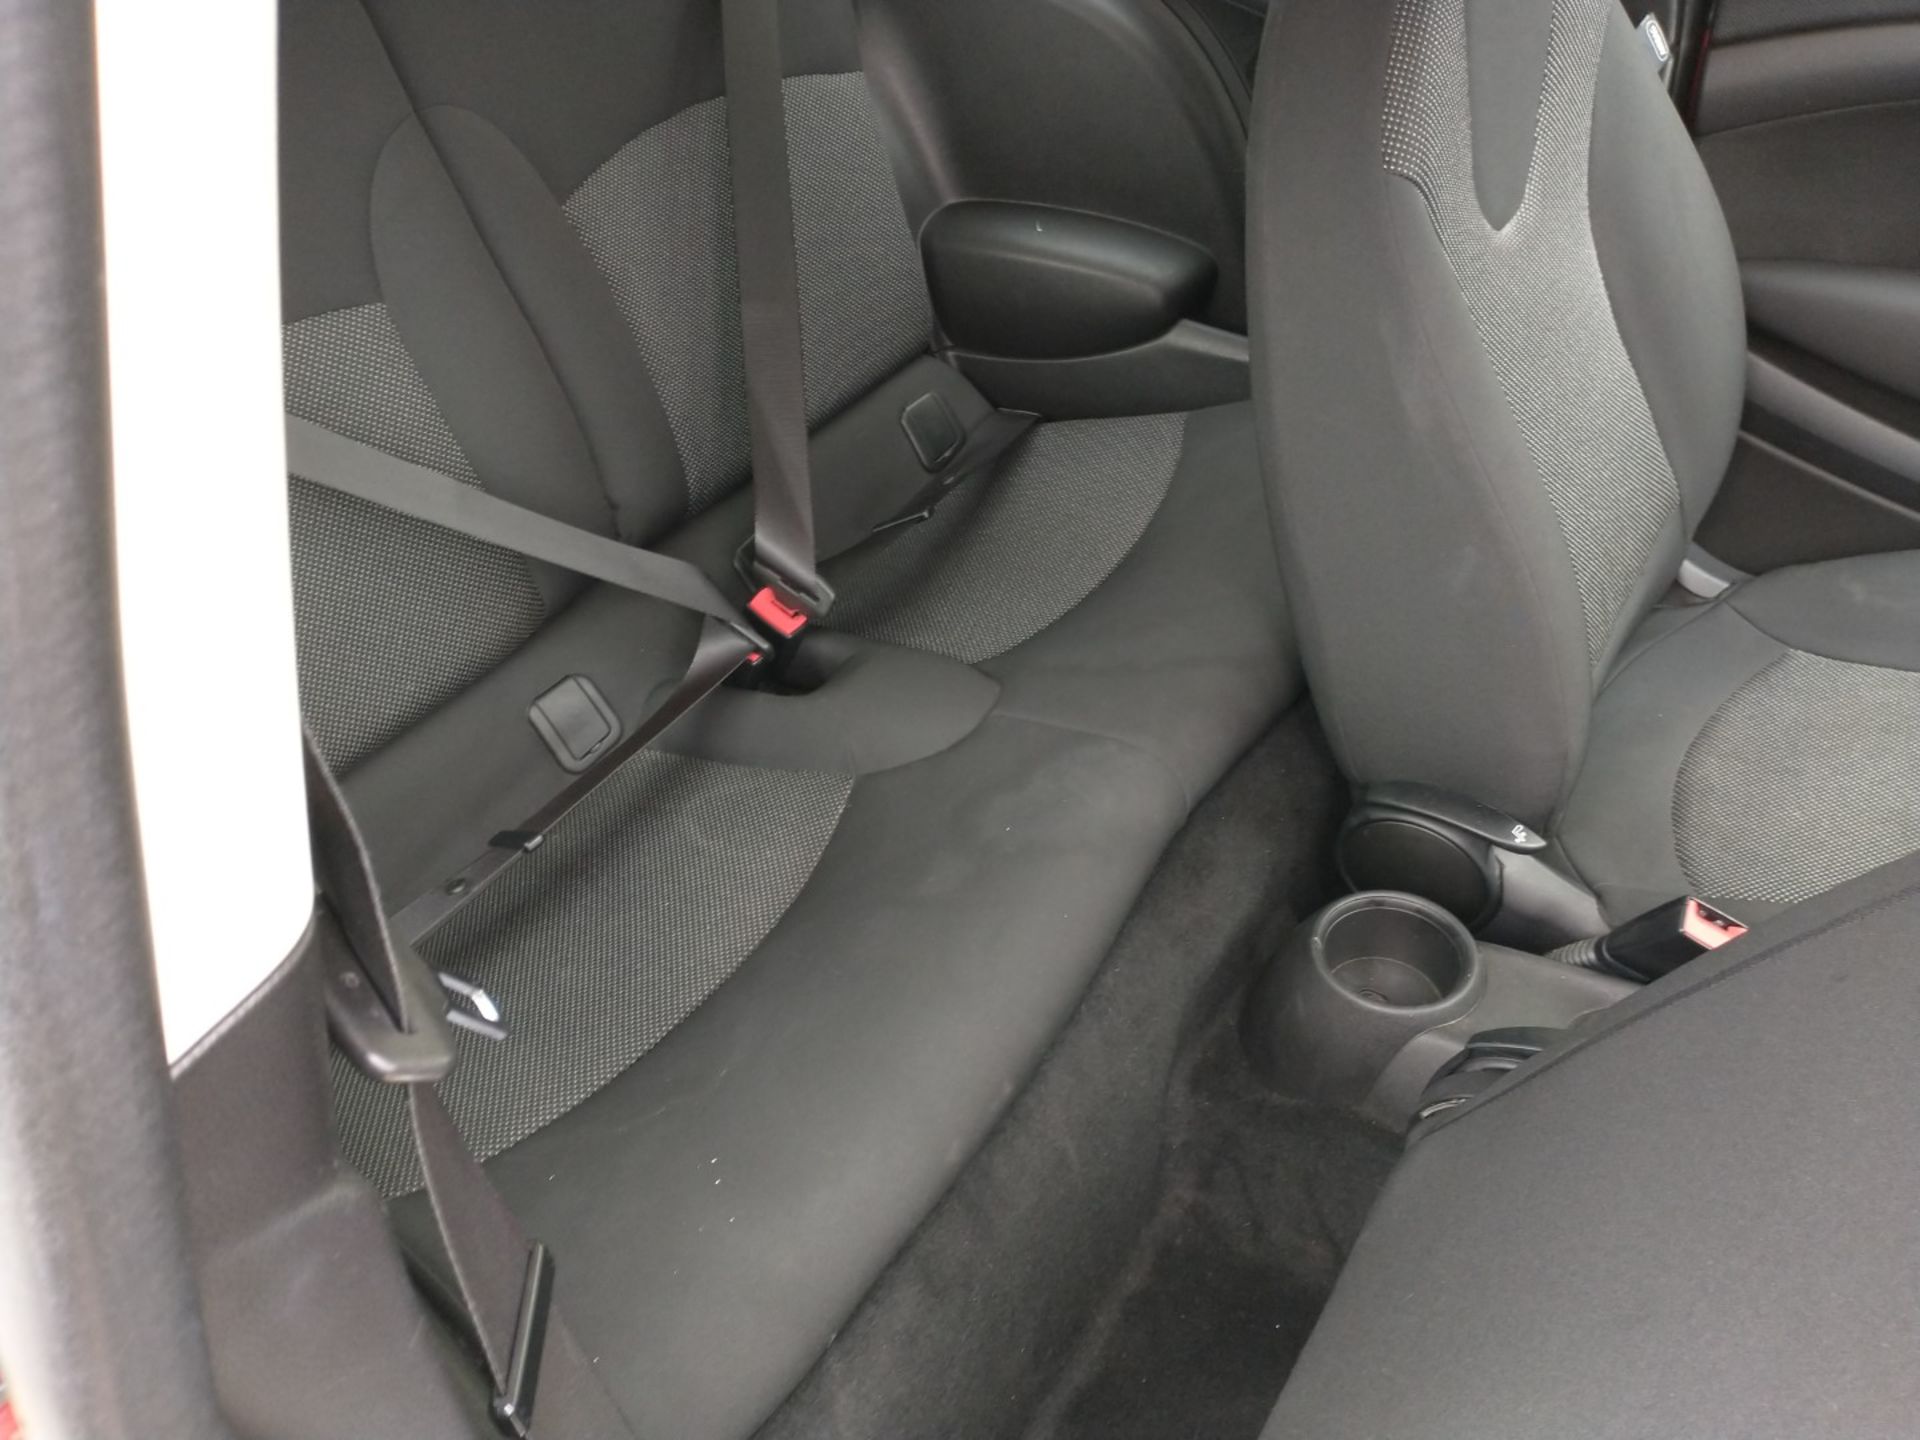 2012 Mini Cooper D 1.6 3Dr Hatchback - CL505 - Ref: VVS0016 - NO VAT ON THE HAMMER - Location: Corby - Image 2 of 15